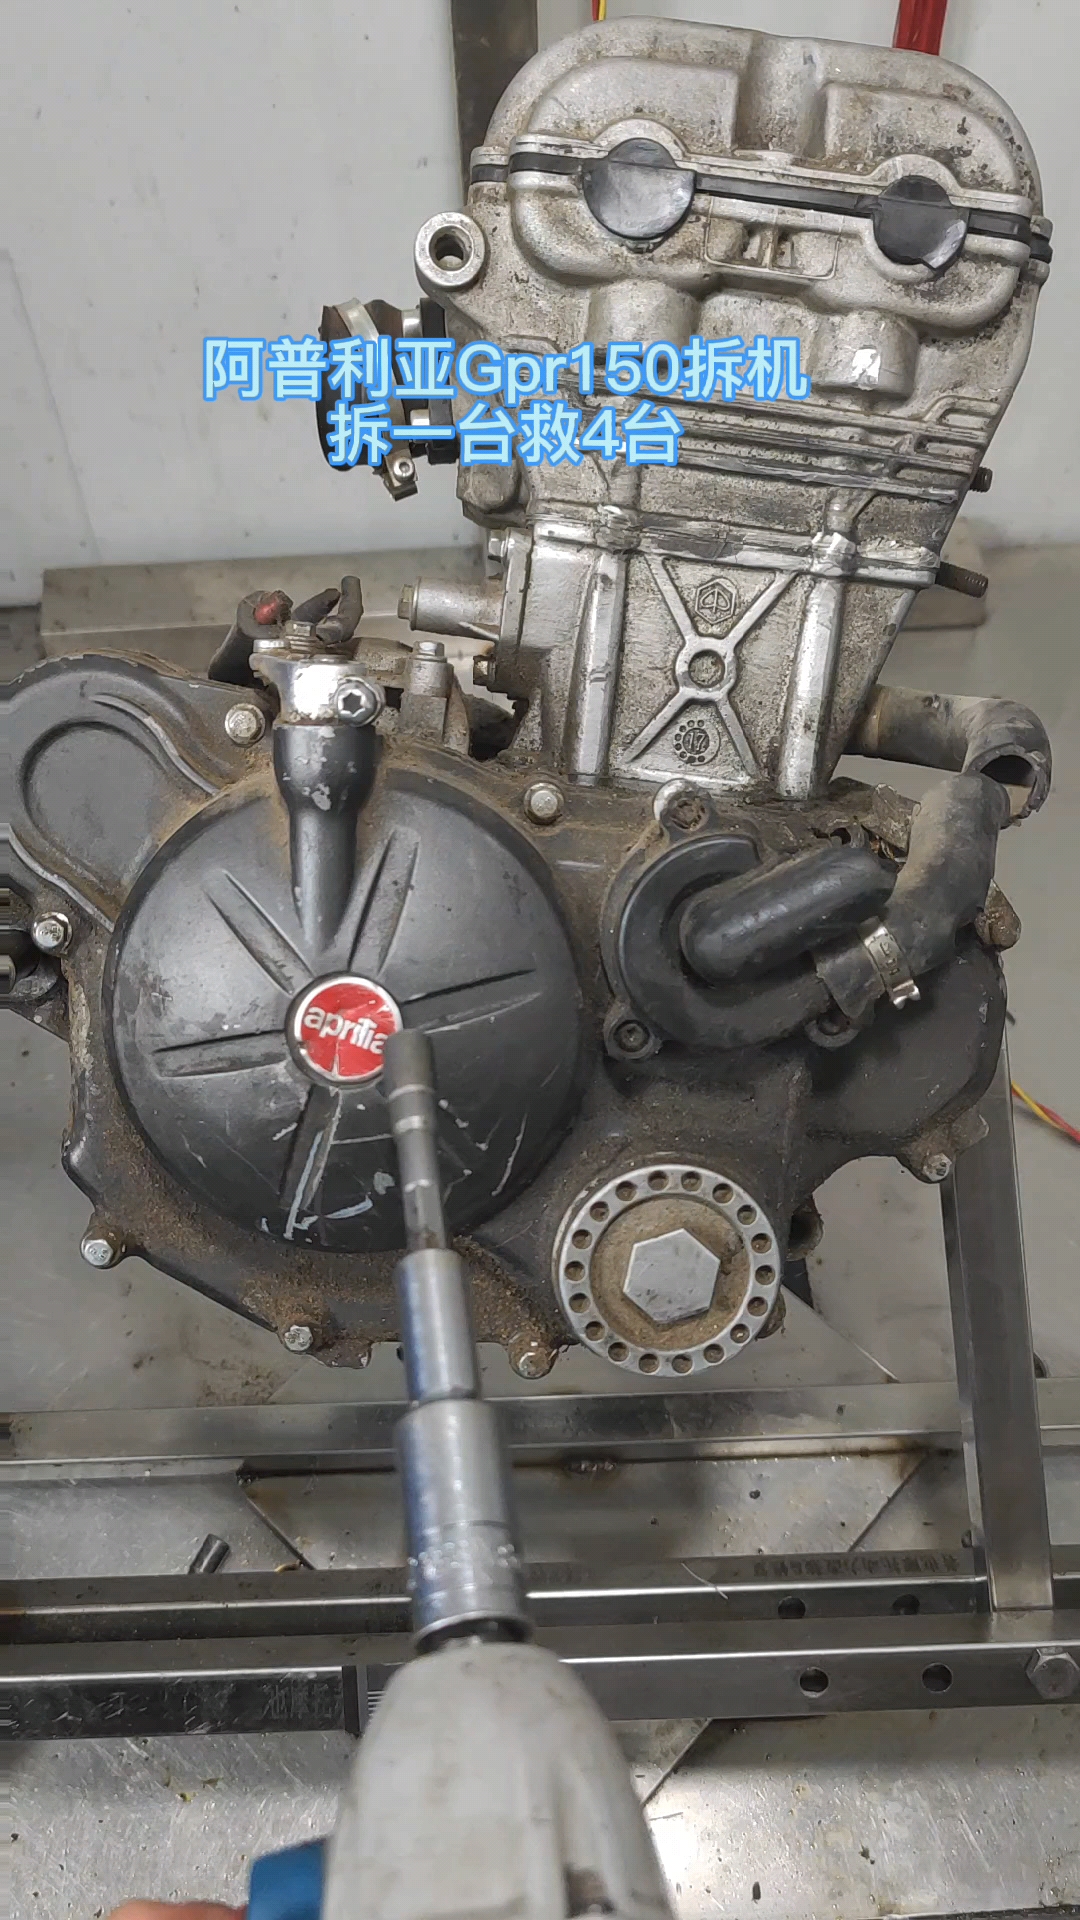 gpr150阿普利亚gpr150发动机拆机过程